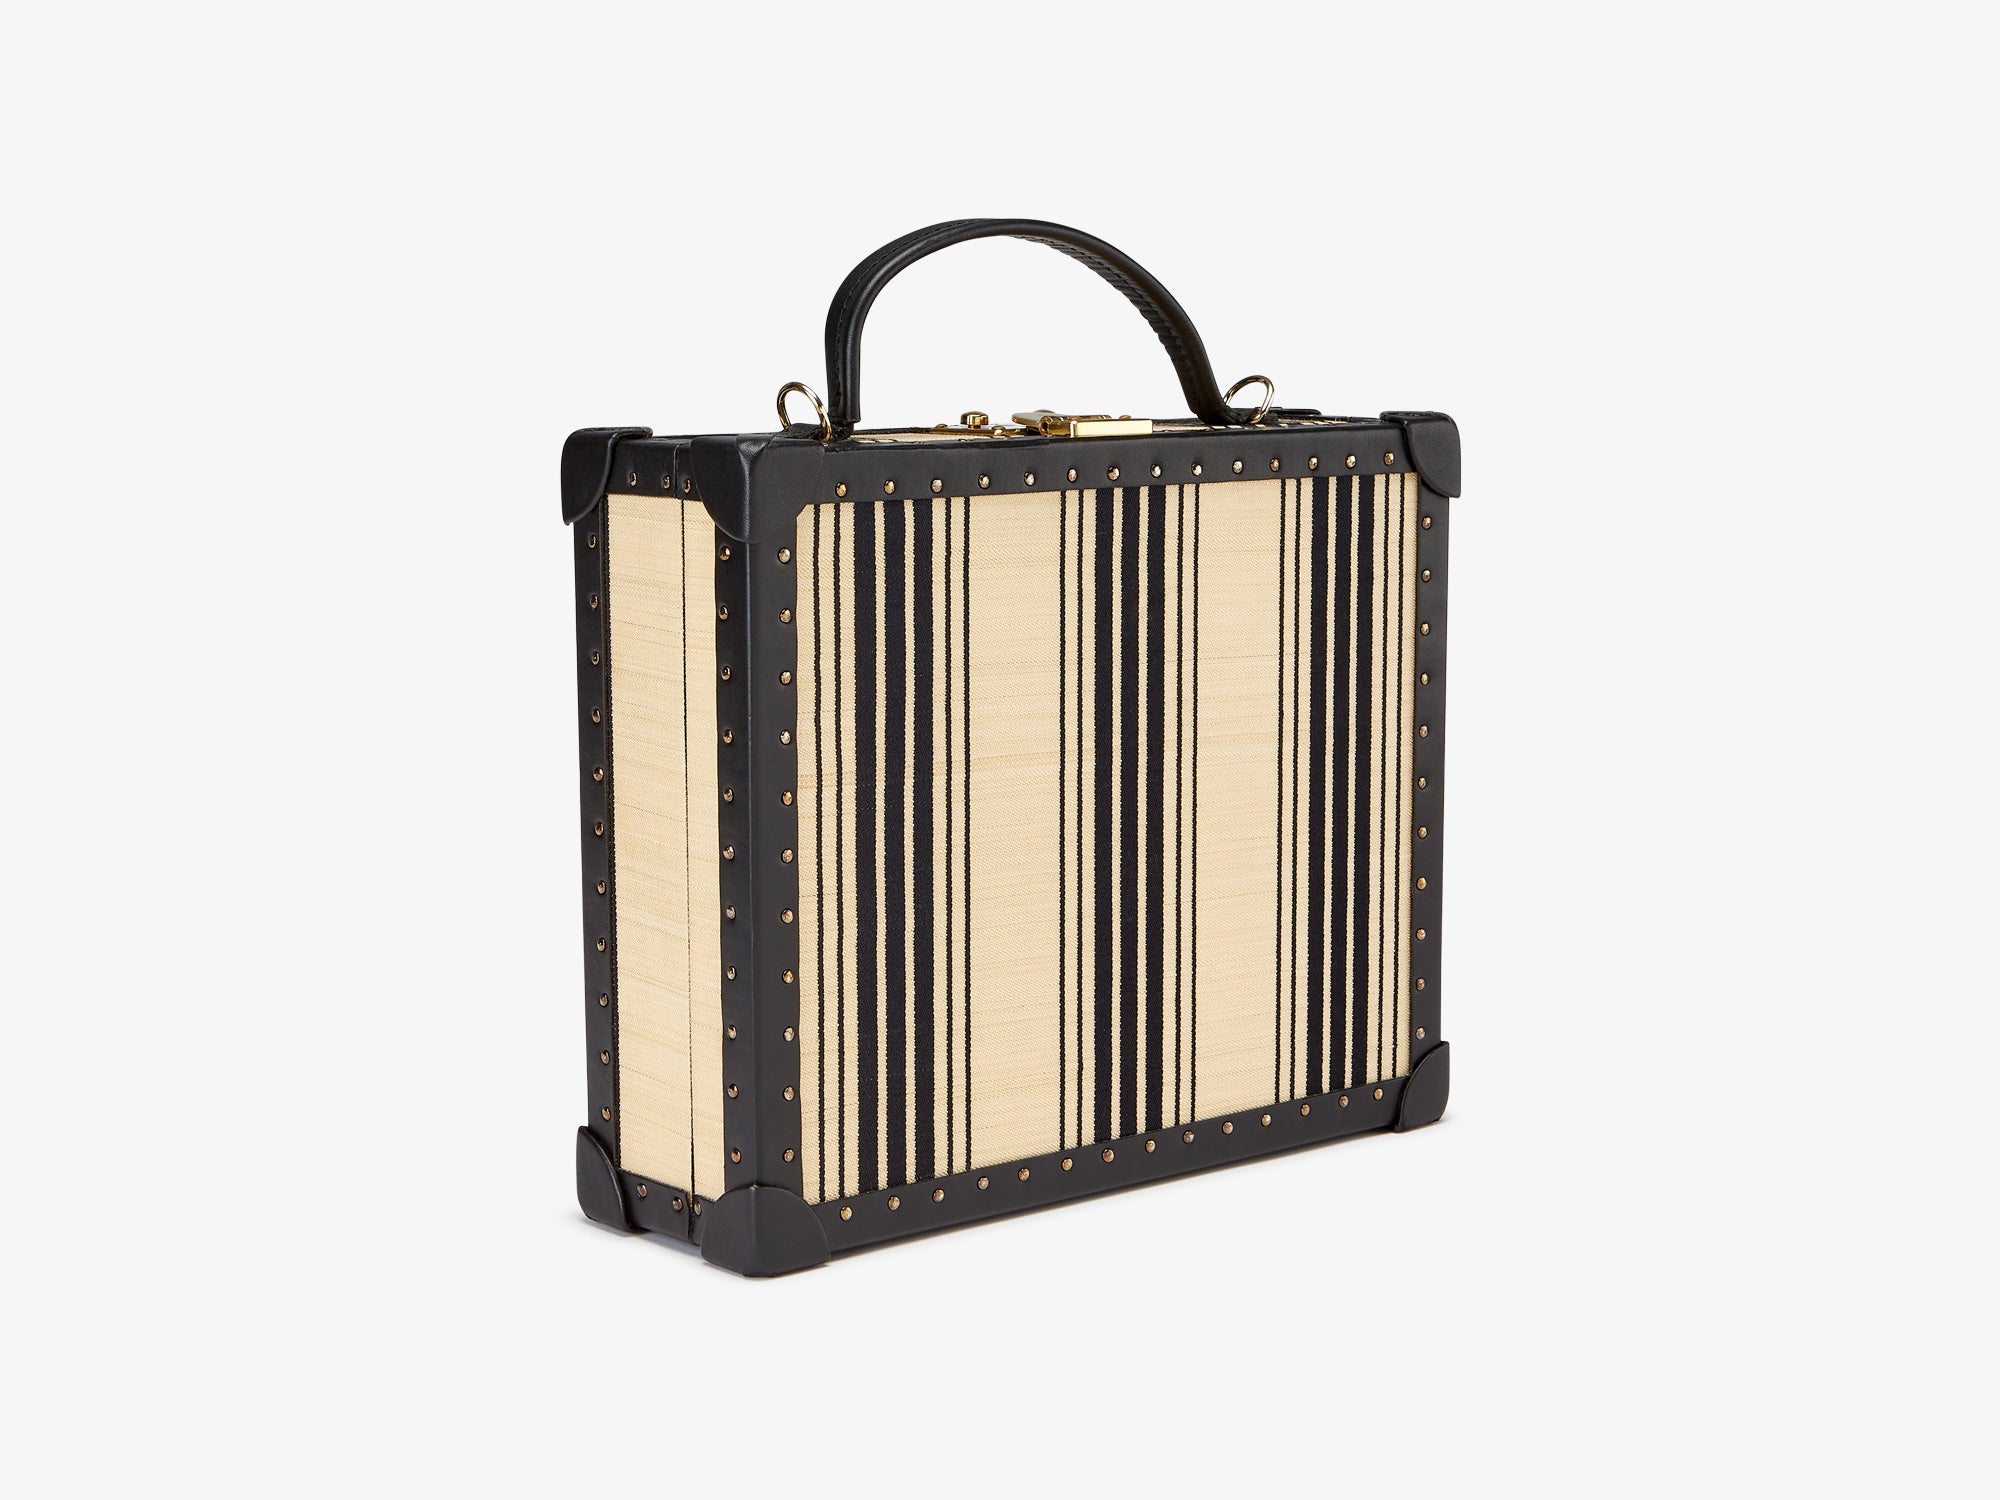 Briefcase lOUIS Vuitton black striated